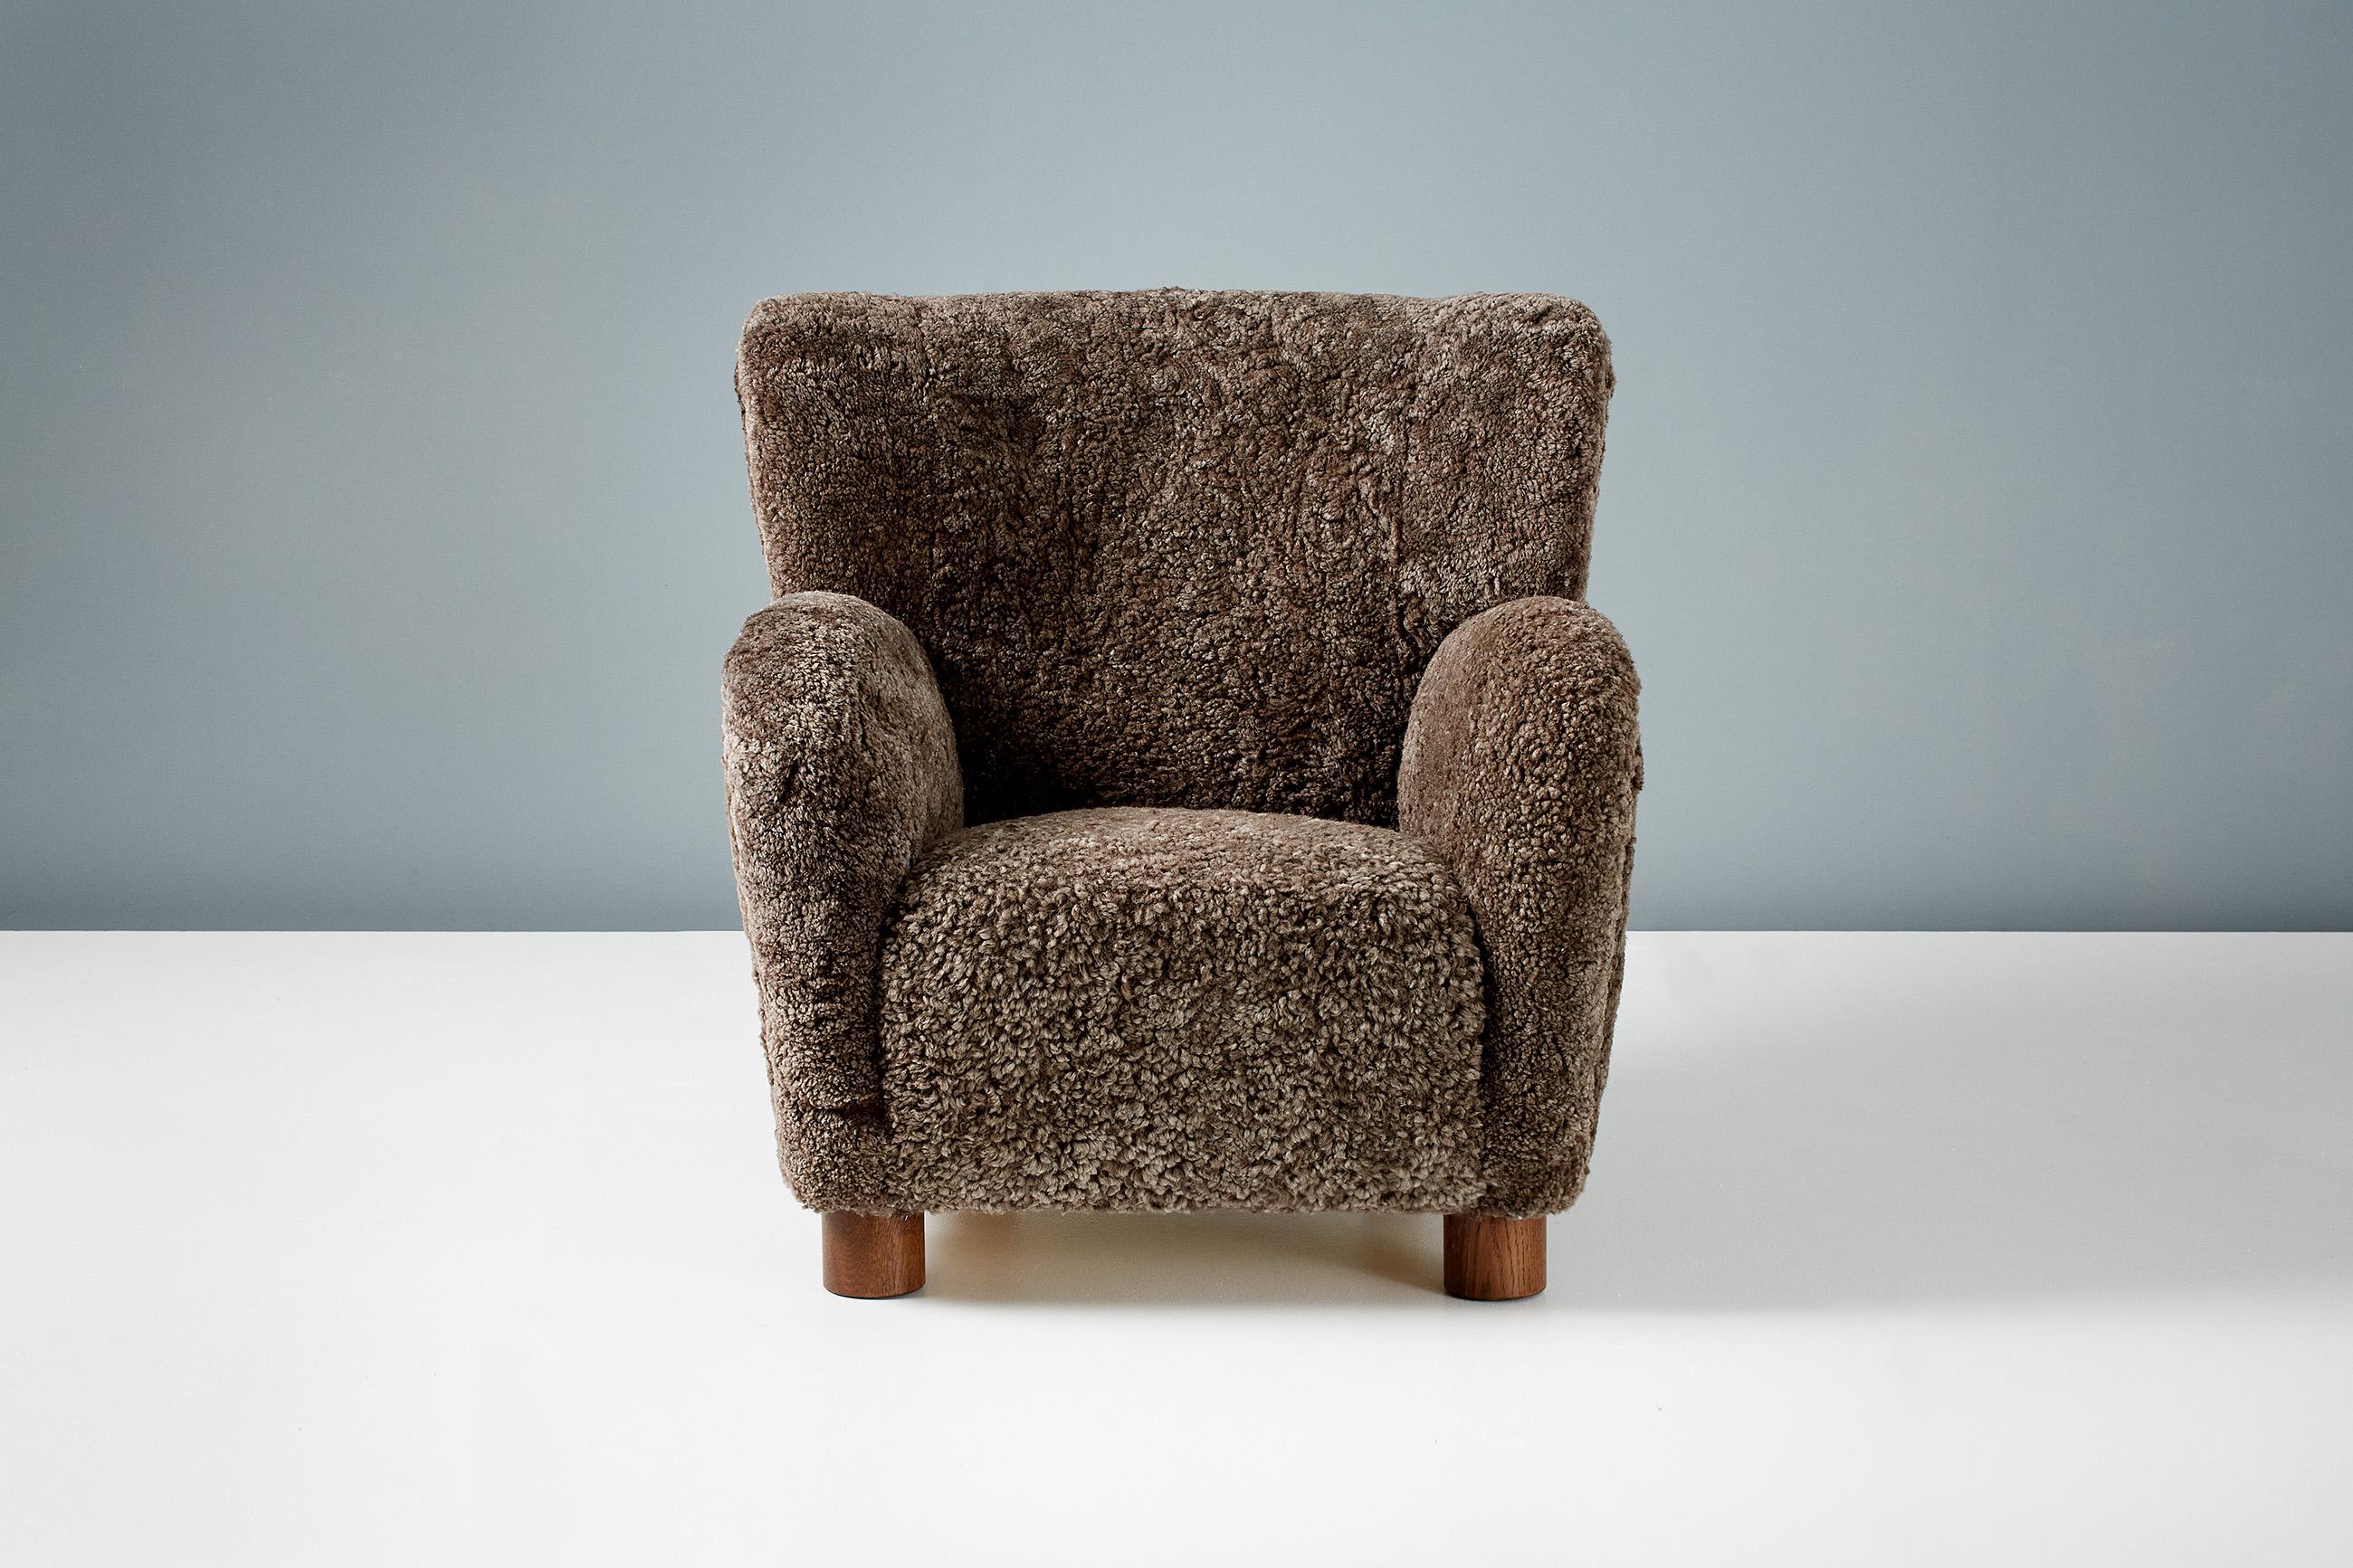 Dagmar Design - Sessel Karu

Diese hochwertigen Loungesessel werden auf Bestellung in unseren Werkstätten in England handgefertigt. Die Stuhlbeine sind in Eiche oder Buche in verschiedenen Ausführungen erhältlich. Die Rahmen sind aus massivem